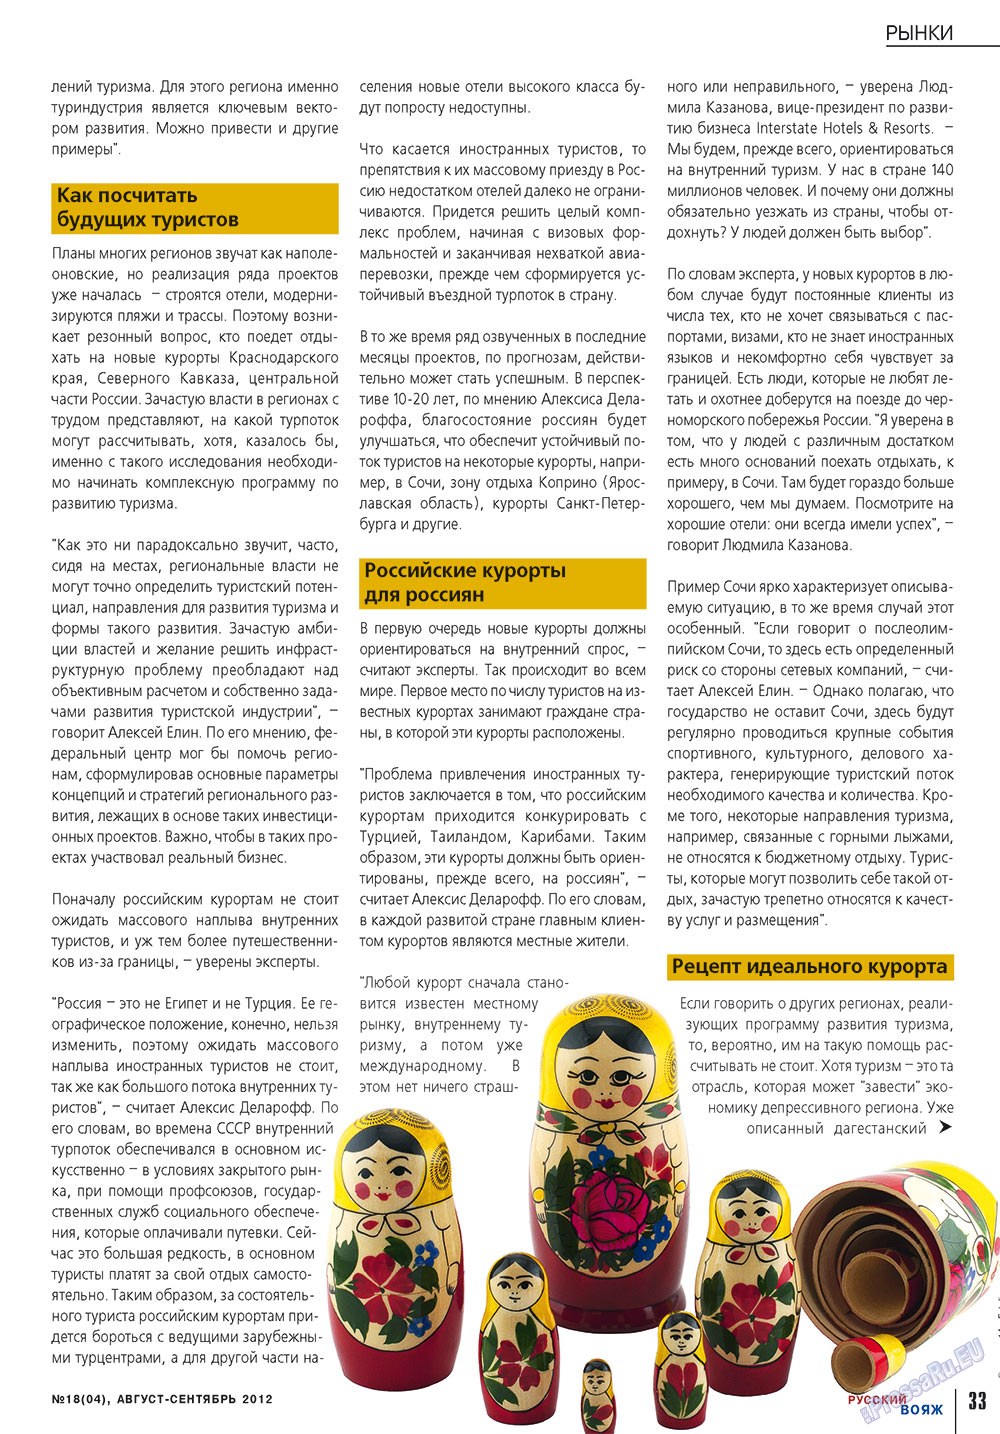 Русский вояж (журнал). 2012 год, номер 18, стр. 33